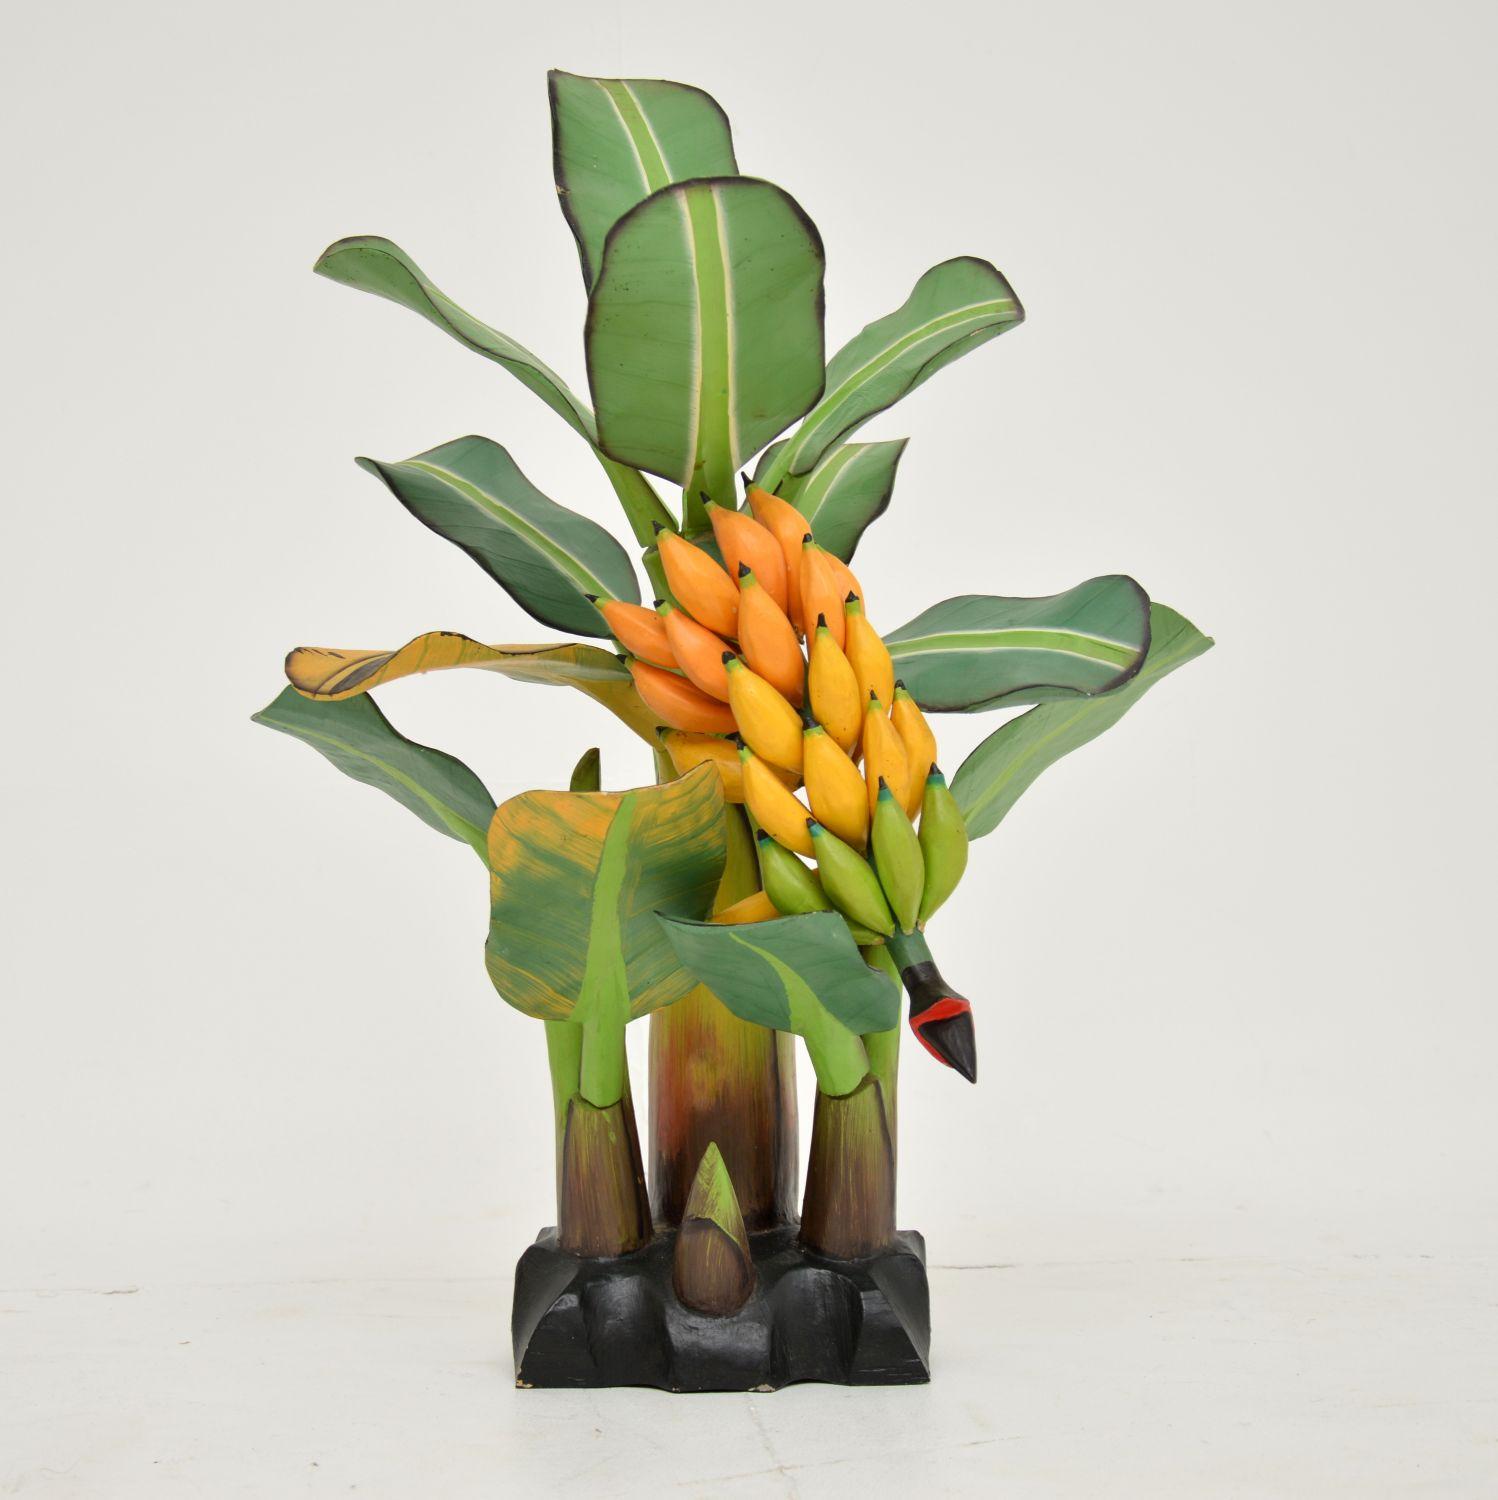 Eine schöne und spielerische Vintage geschnitzt hölzerne Tischplatte Skulptur eines Bananenbaums. Es wurde von einer Frau erworben, die es auf einer Südamerikareise in den 1970er Jahren bekam.

Sie ist wunderschön geschnitzt und bemalt, mit